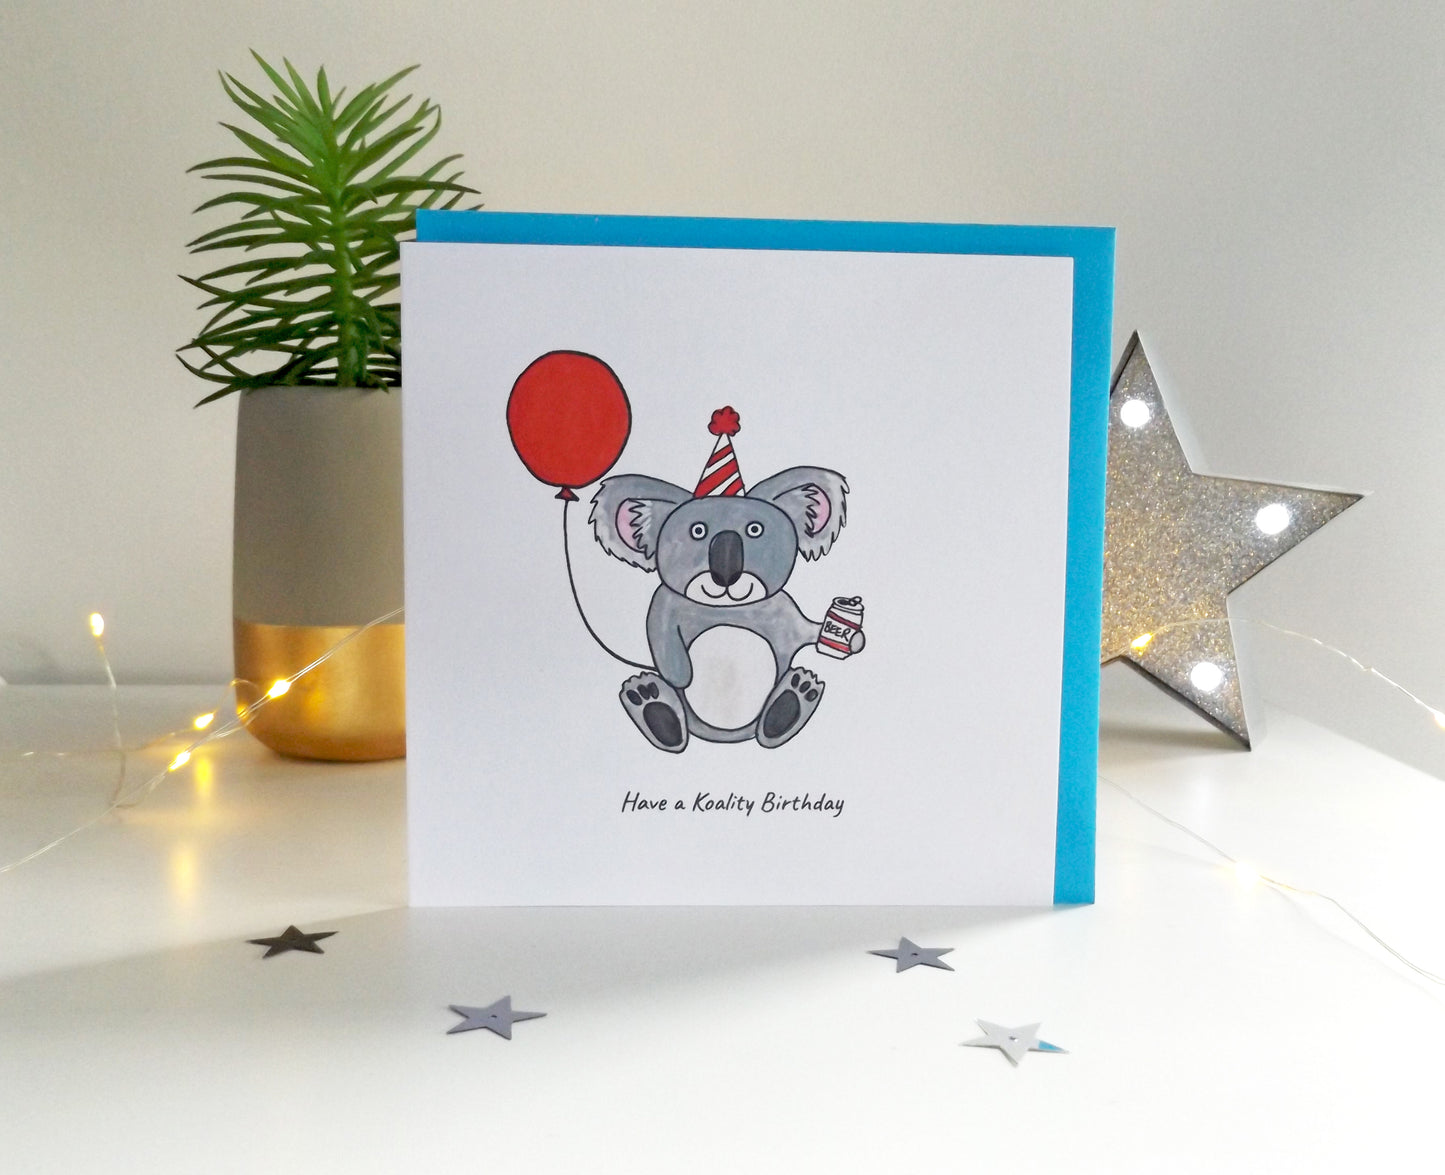 Have a koality Birthday - funny Koala Birthday card